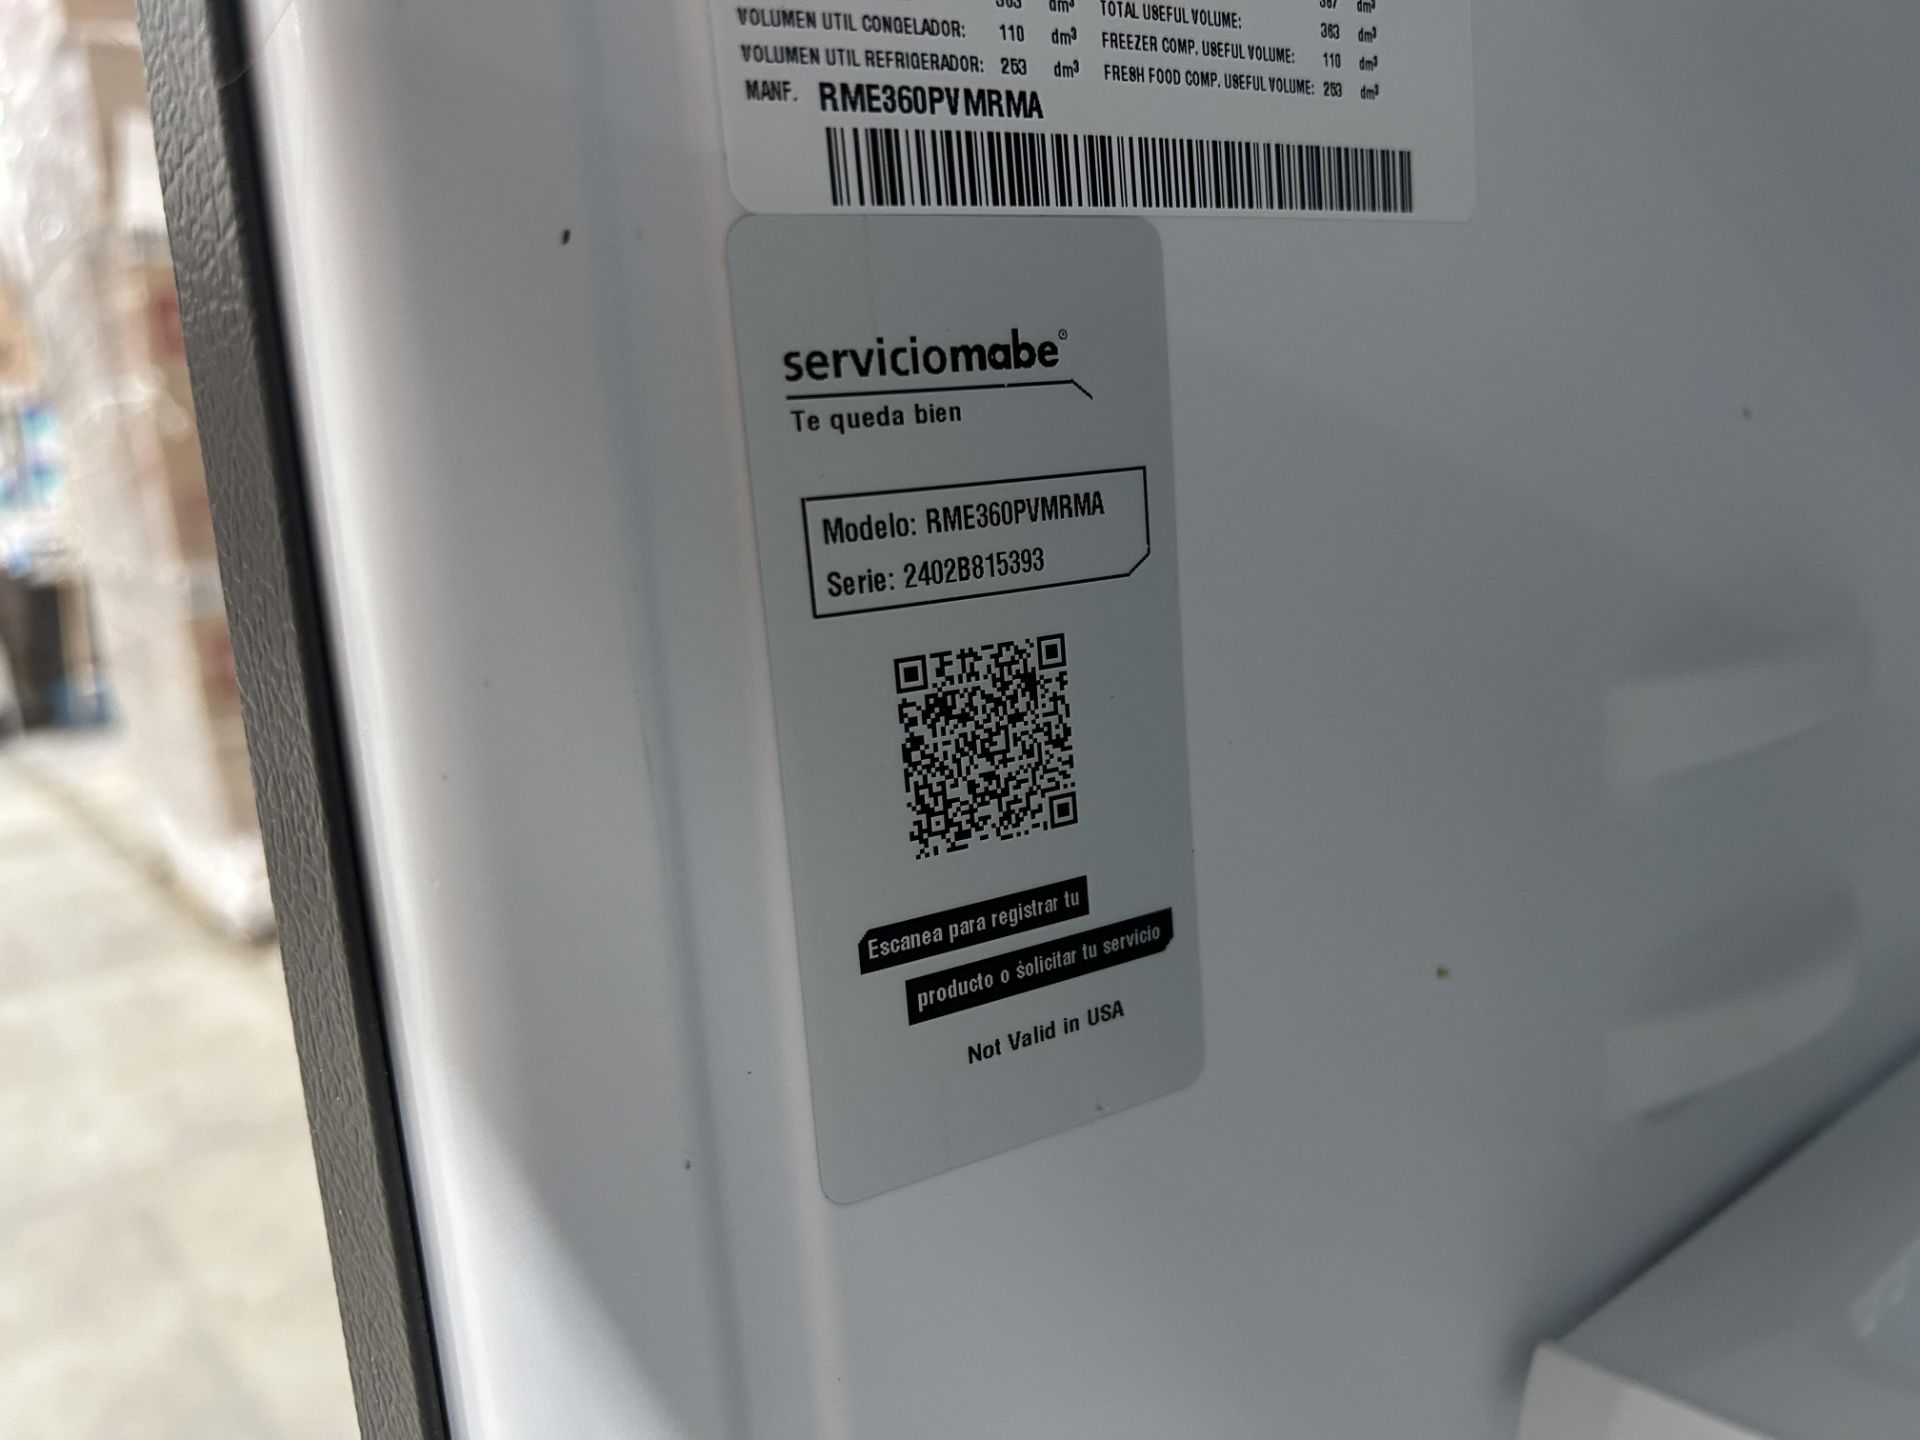 Lote de 2 refrigeradores contiene: 1 Refrigerador Marca MABE, Modelo RME360PVMRMA, Serie 822367, Co - Image 8 of 10